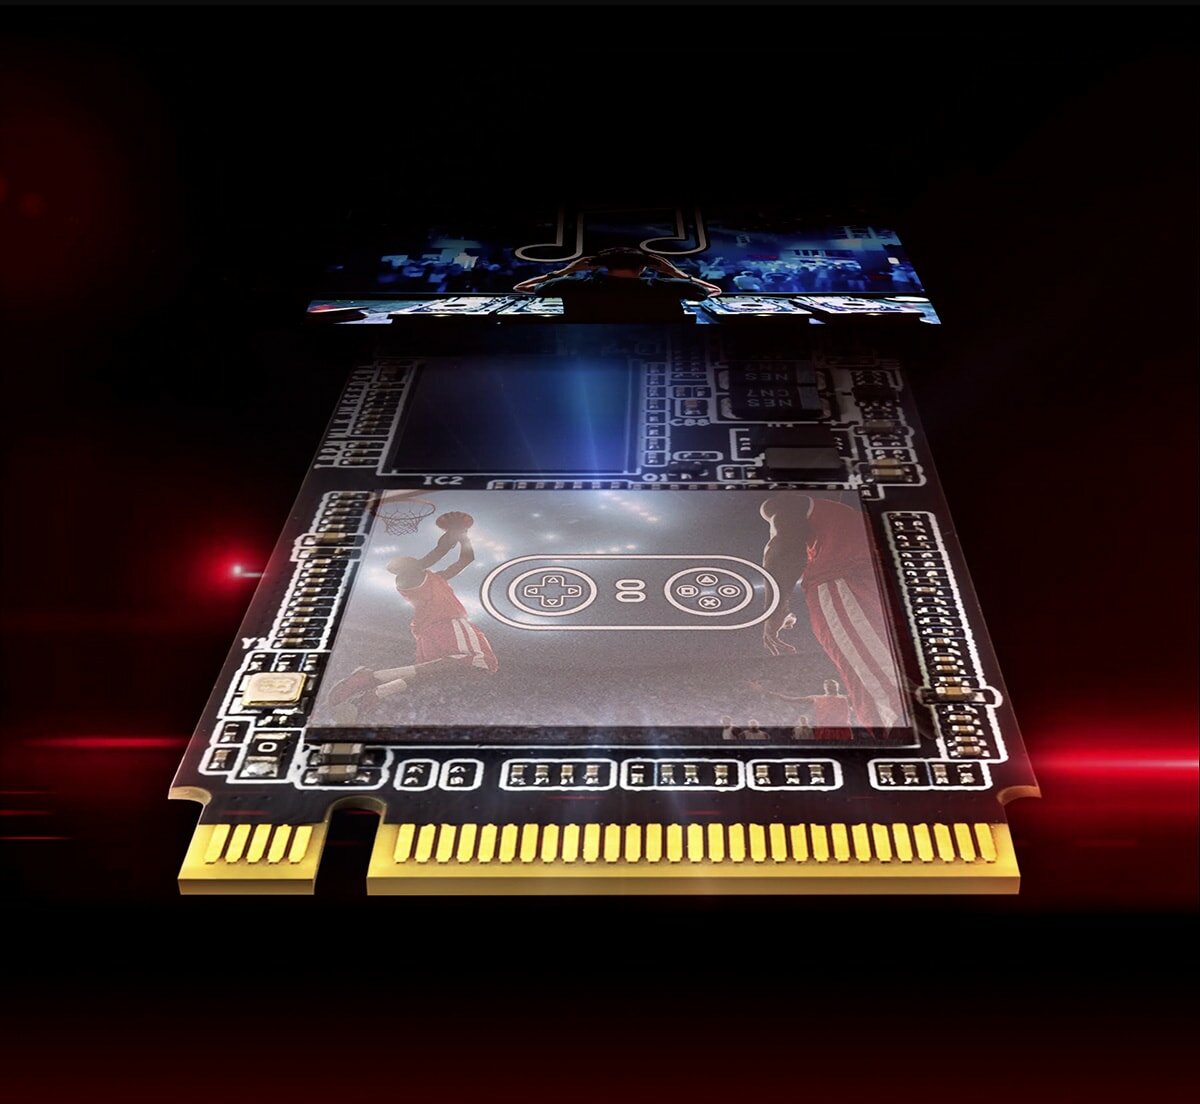 Dysk SSD Adata XPG SX8200 Pro 1TB M.2 PCIe NVMe widok na dysk od strony złącza